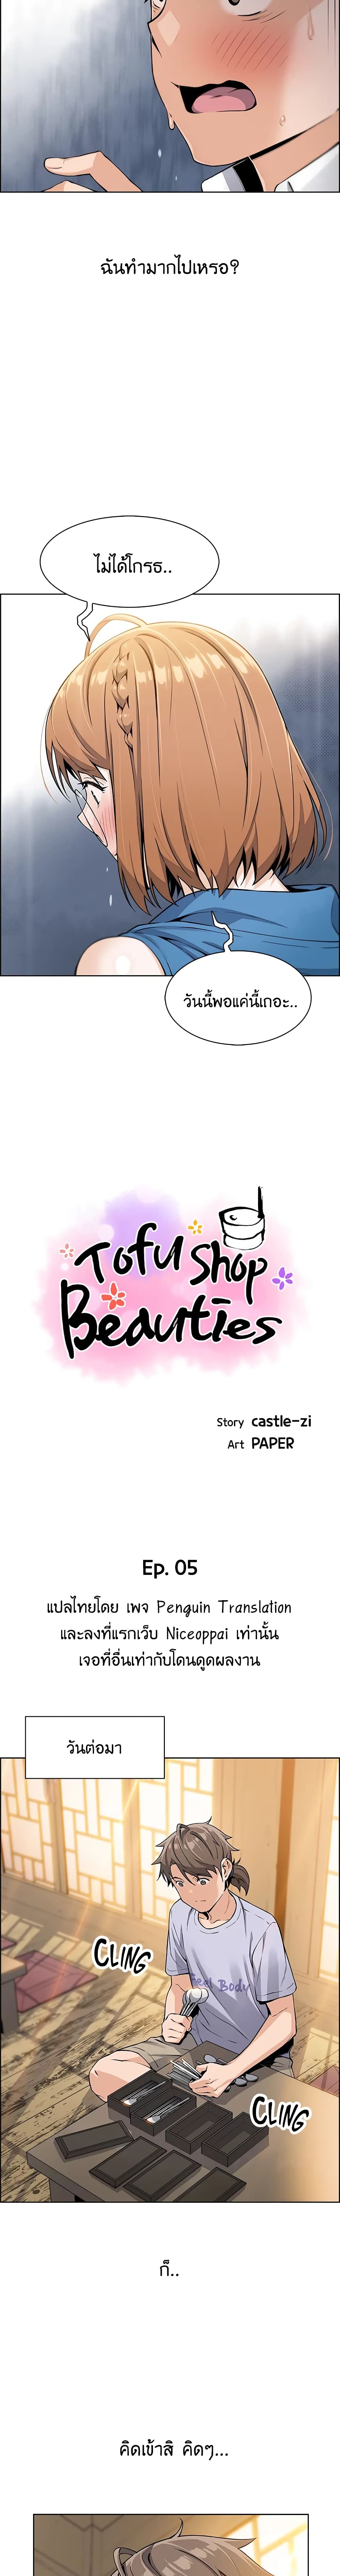 Tofu Shop Beauties 5 04